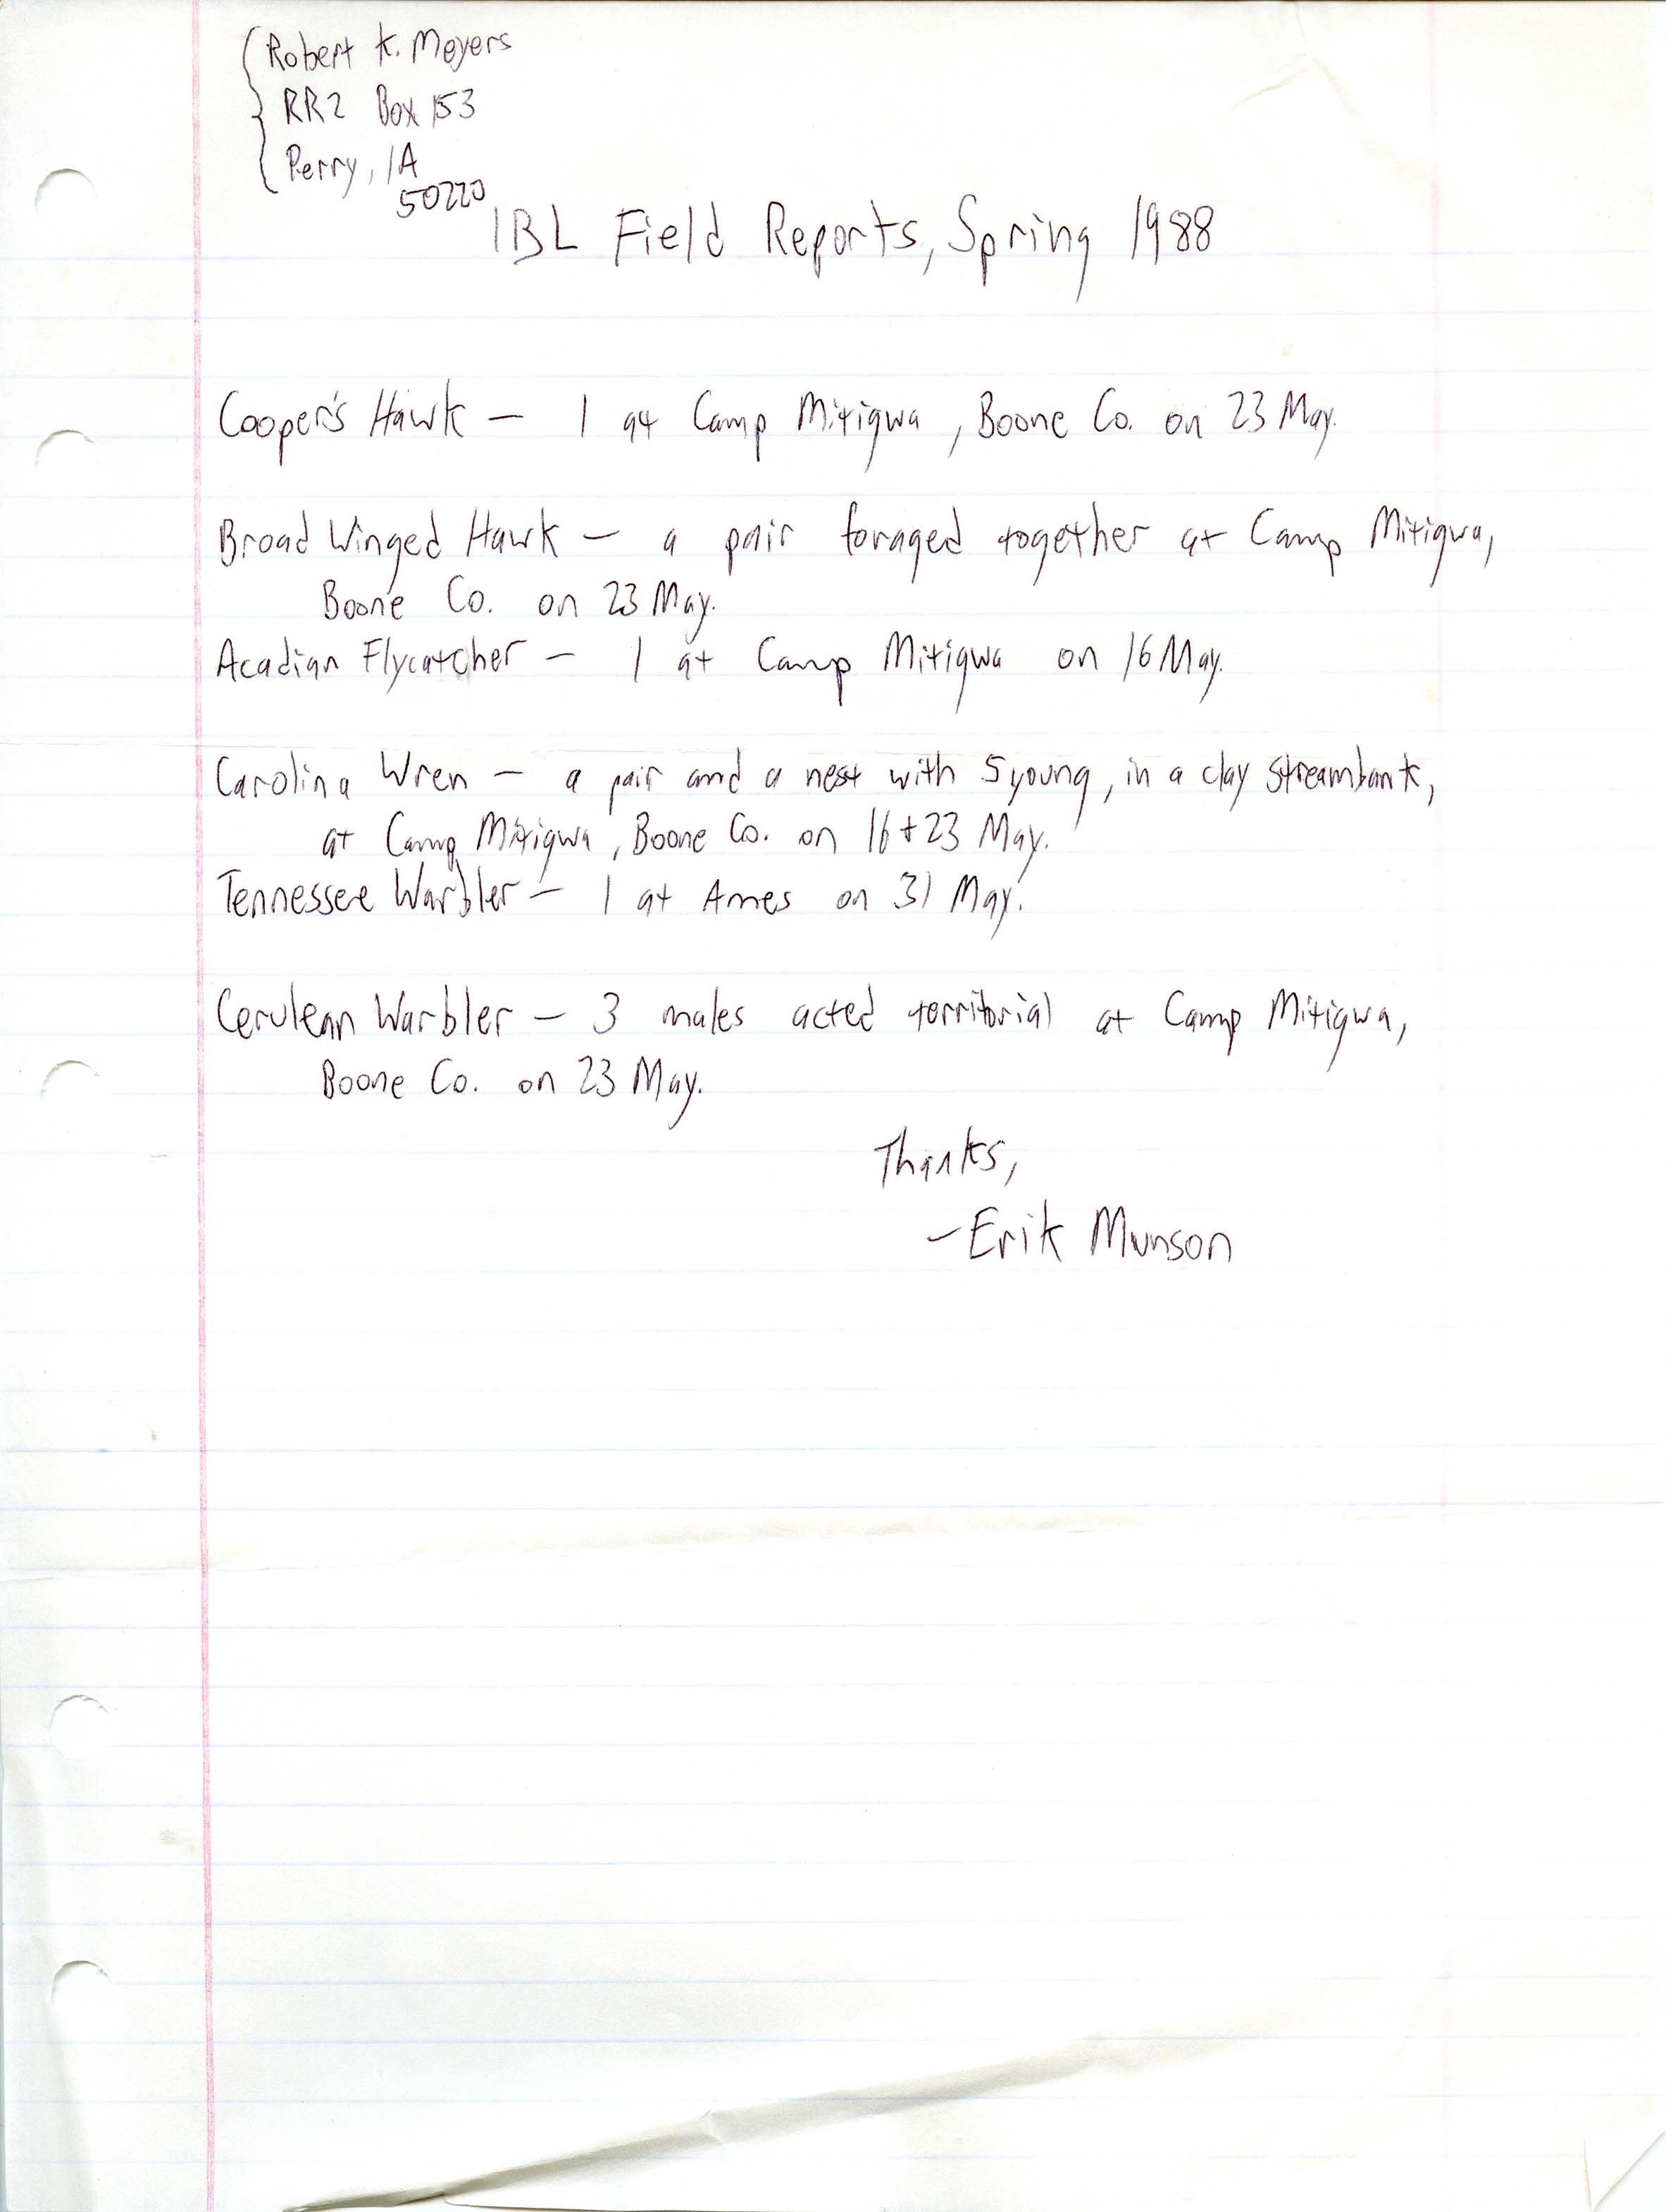 Erik Munson letter to Robert K. Myers regarding bird sightings, spring 1988